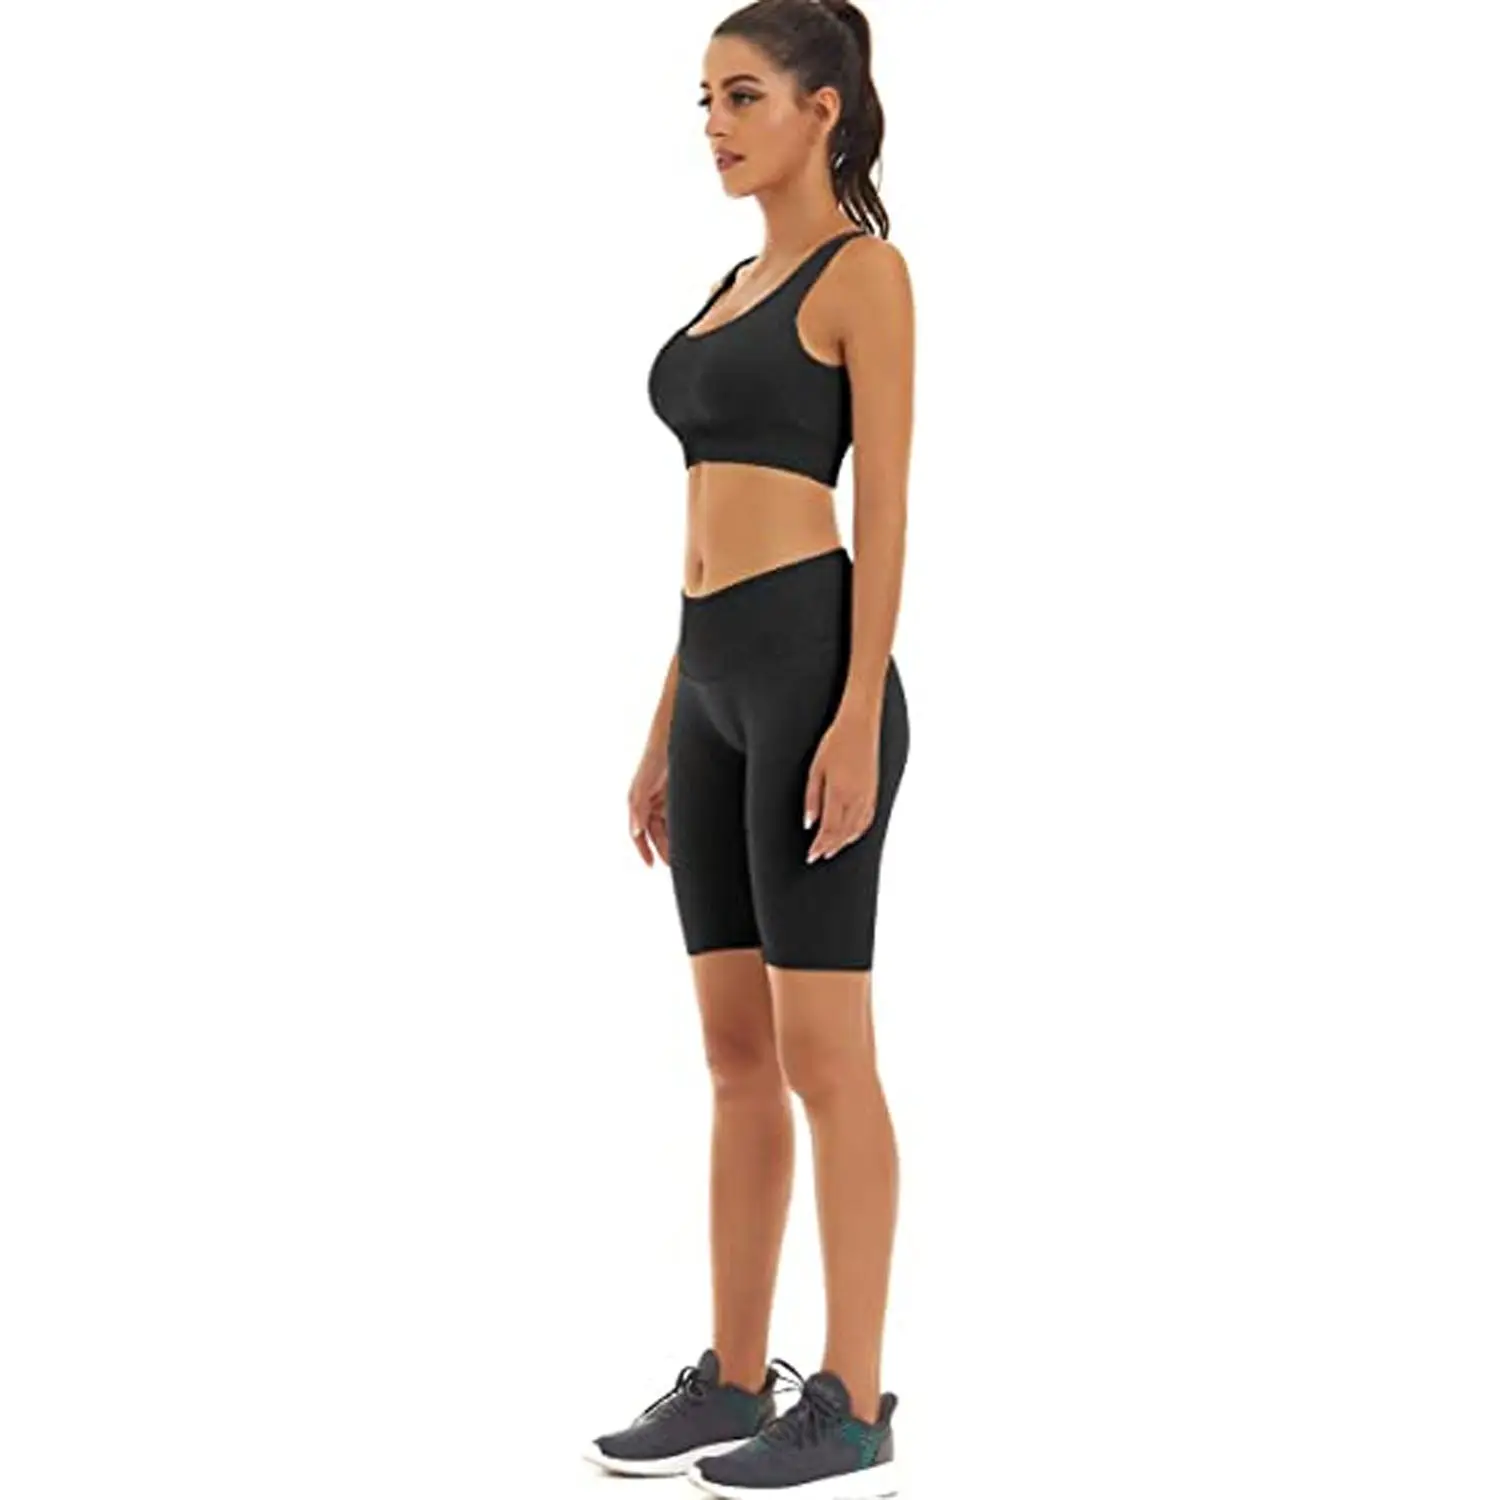 Fitness sports senhoras cintura alta leggings / yoga calças ficando para a mulher